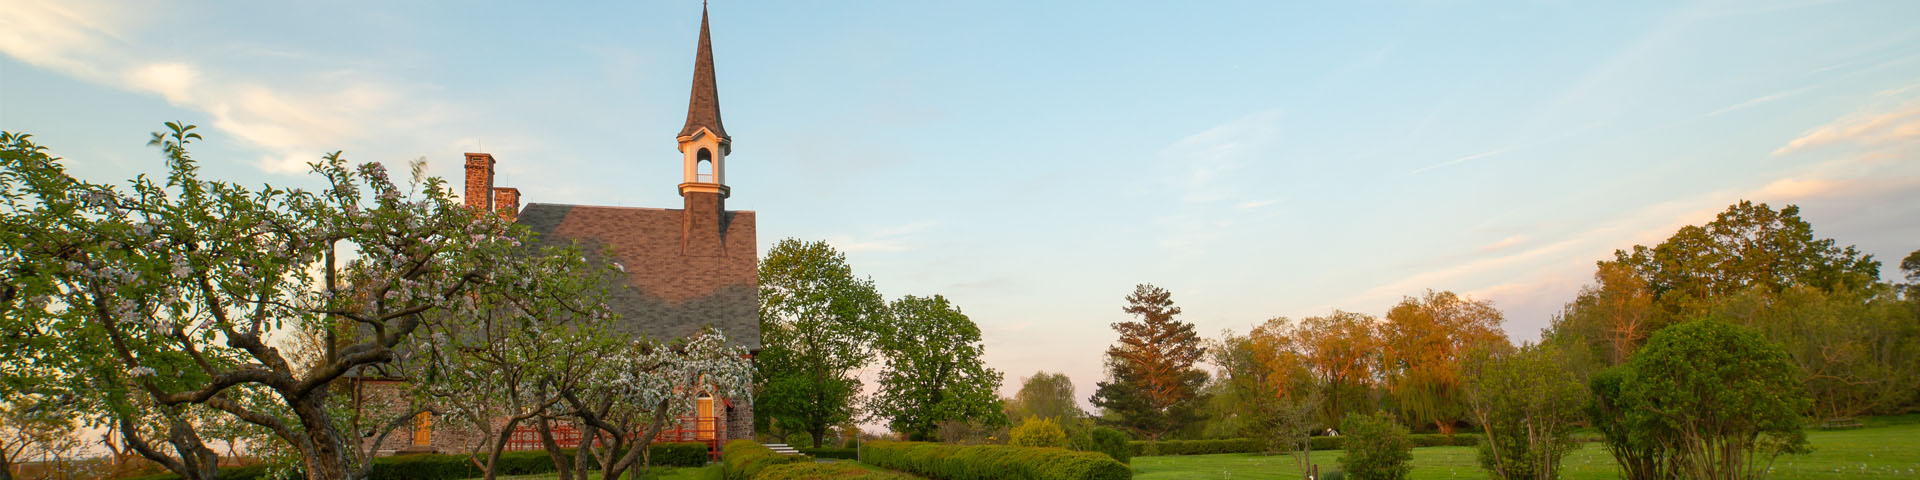 Vue du côté de l'Église-souvenir de Grand-Pré, tout près de pommiers en fleurs dans un jardin victorien.